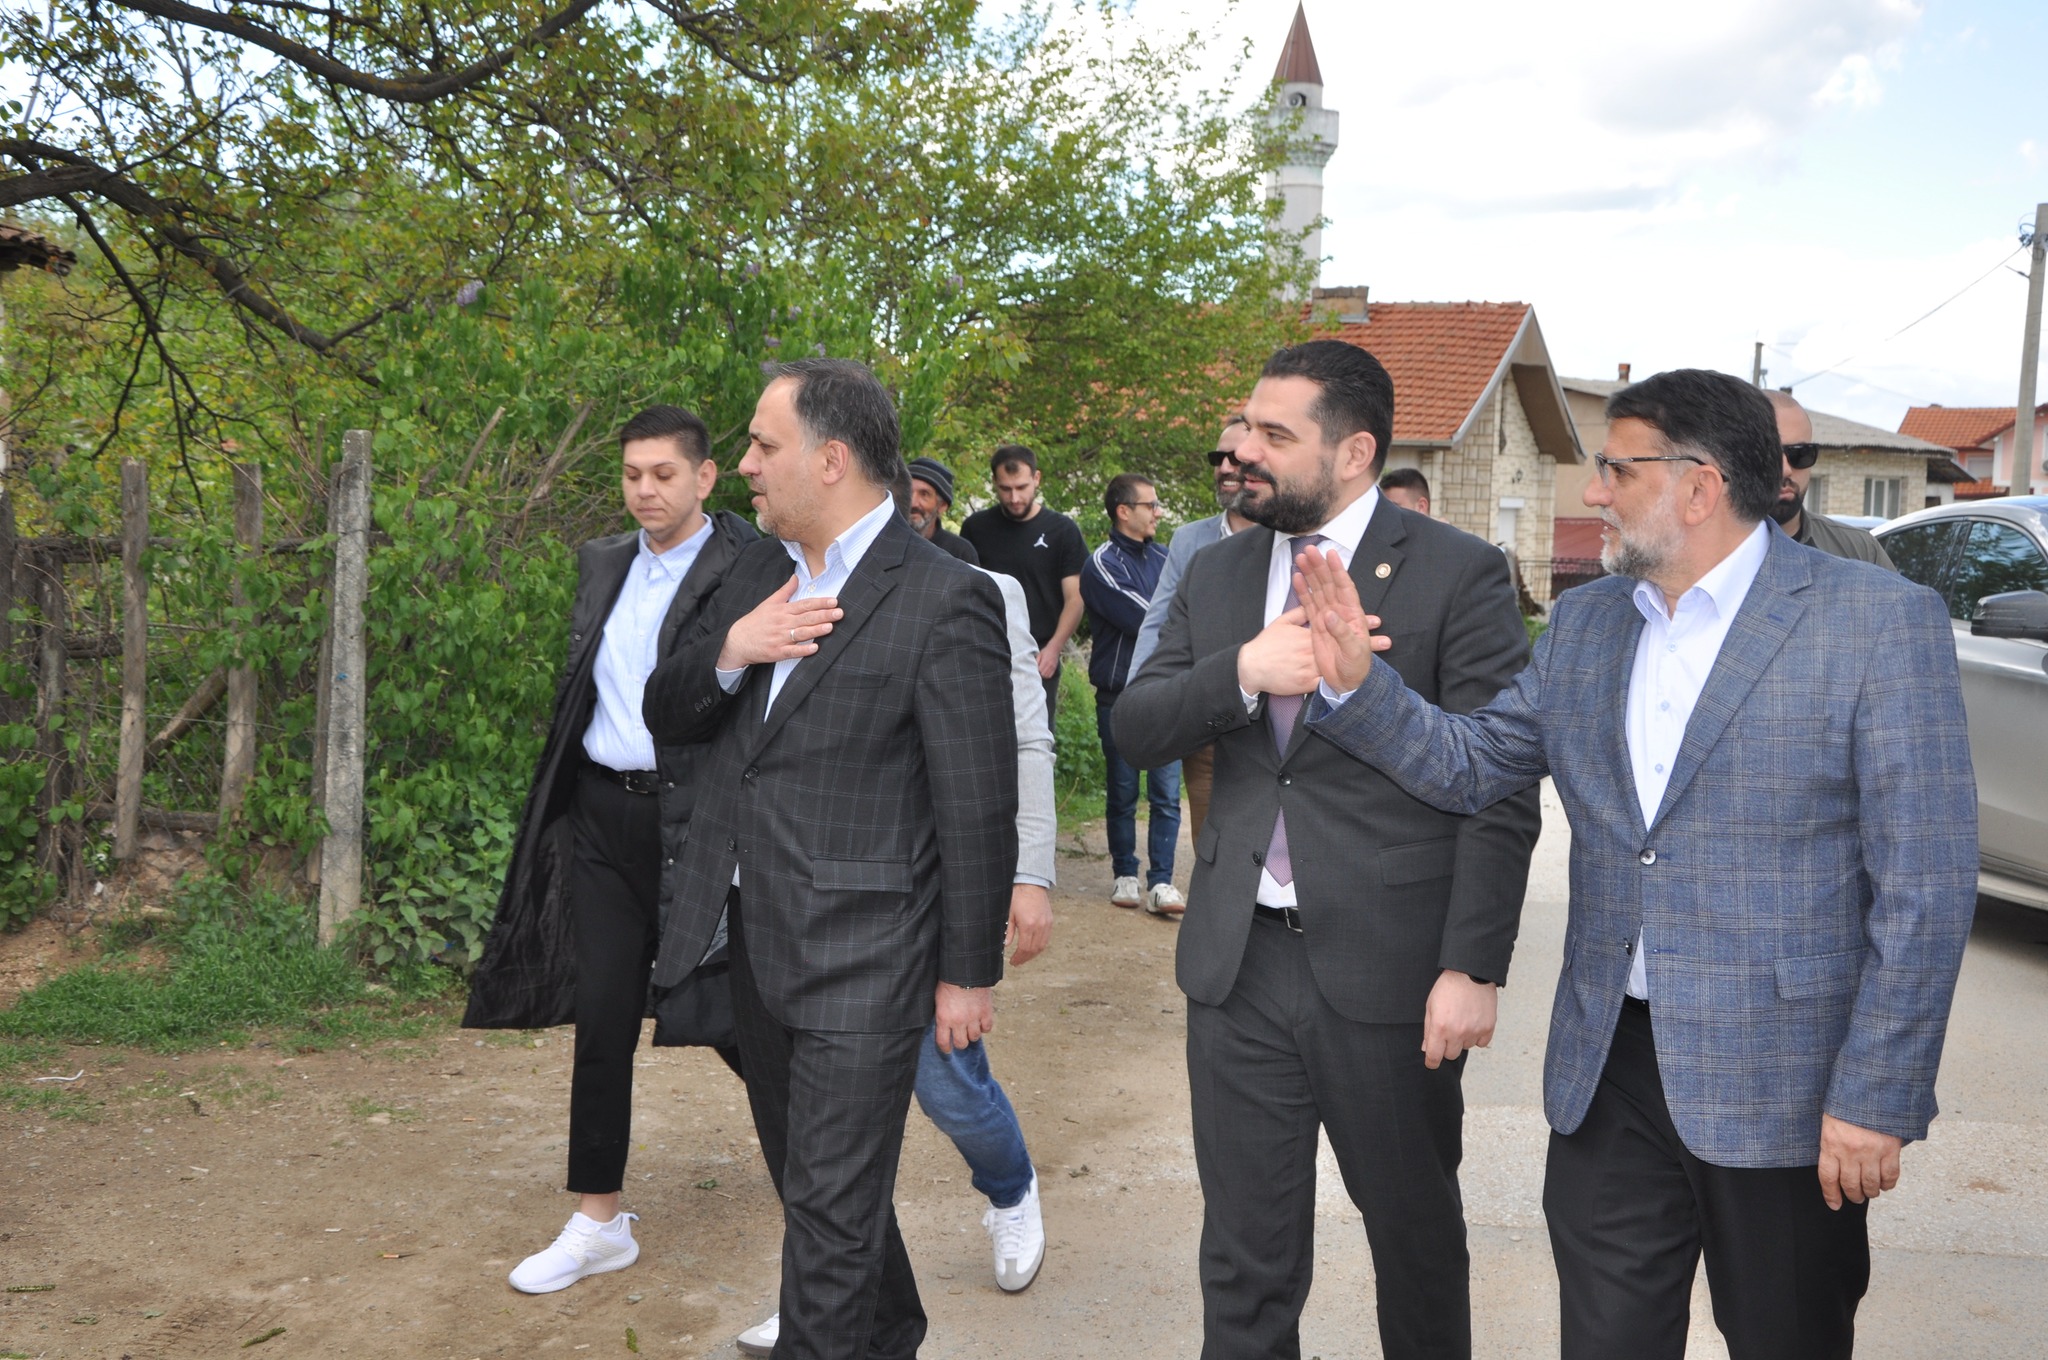 Milletvekili adayı Salih Murat’tan Mickoski ve arkadaşlarının tehditlerine kınama